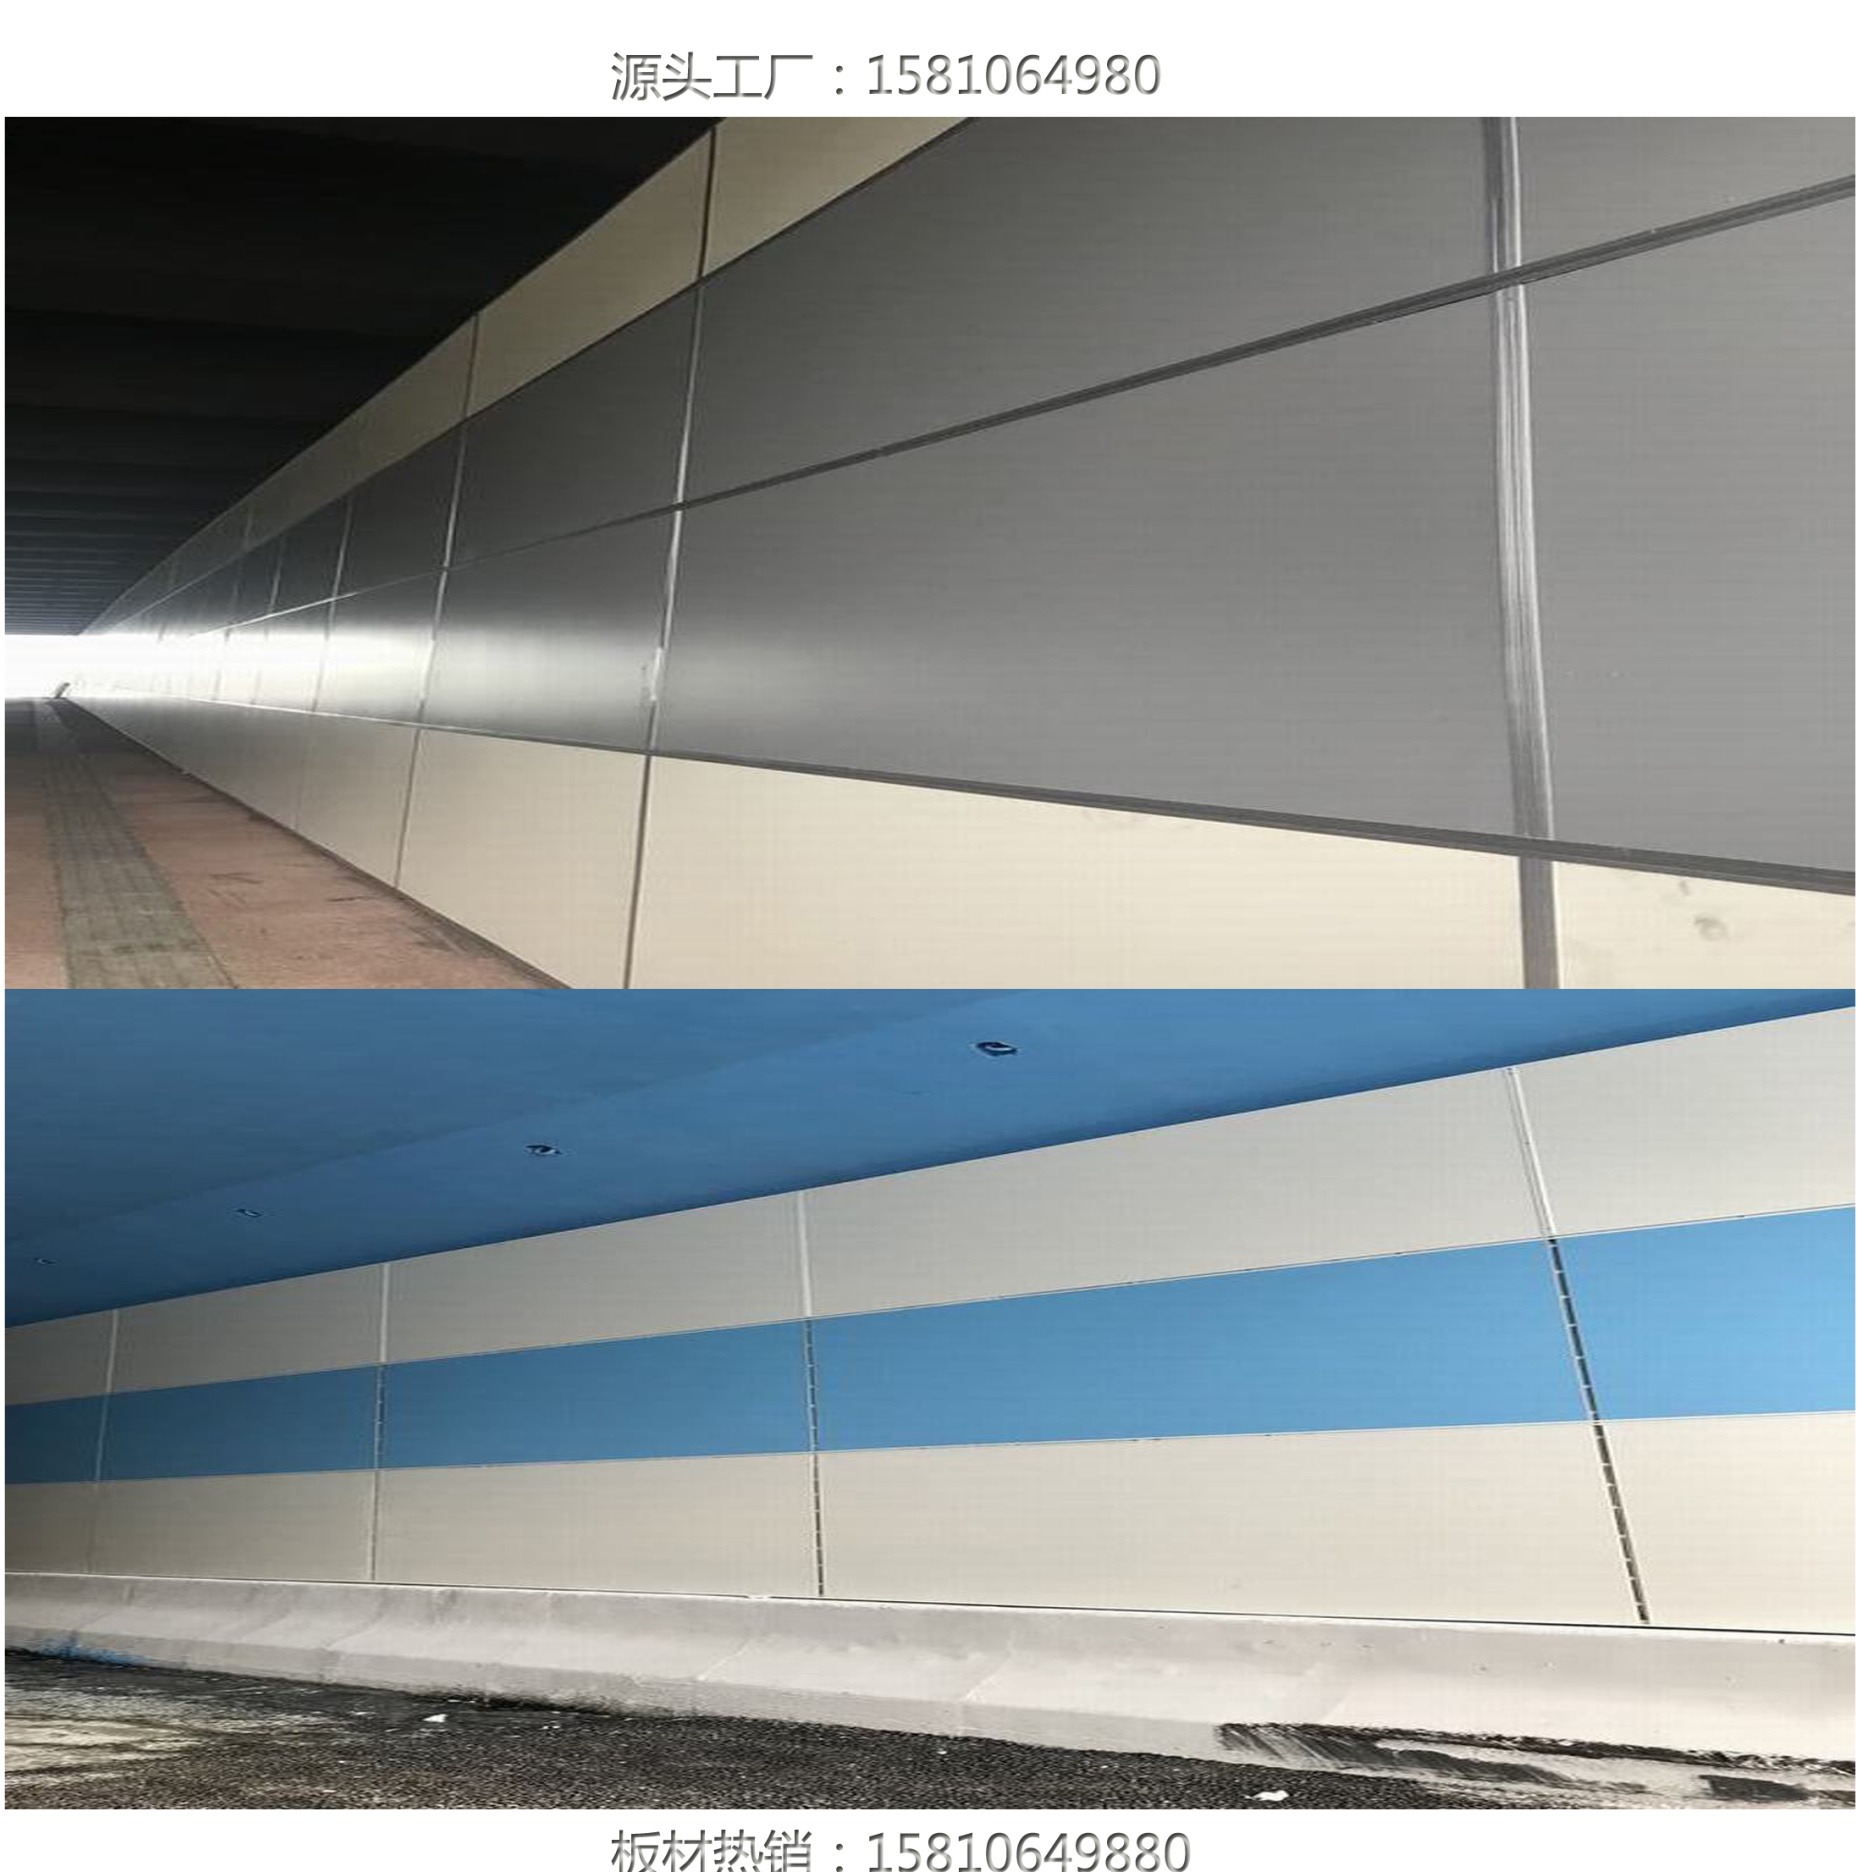 重庆铝石板；纤维水泥铝钙复合板;铝钙板；铝纤维铝石板；8mm隧道装饰板；隧道防火板3